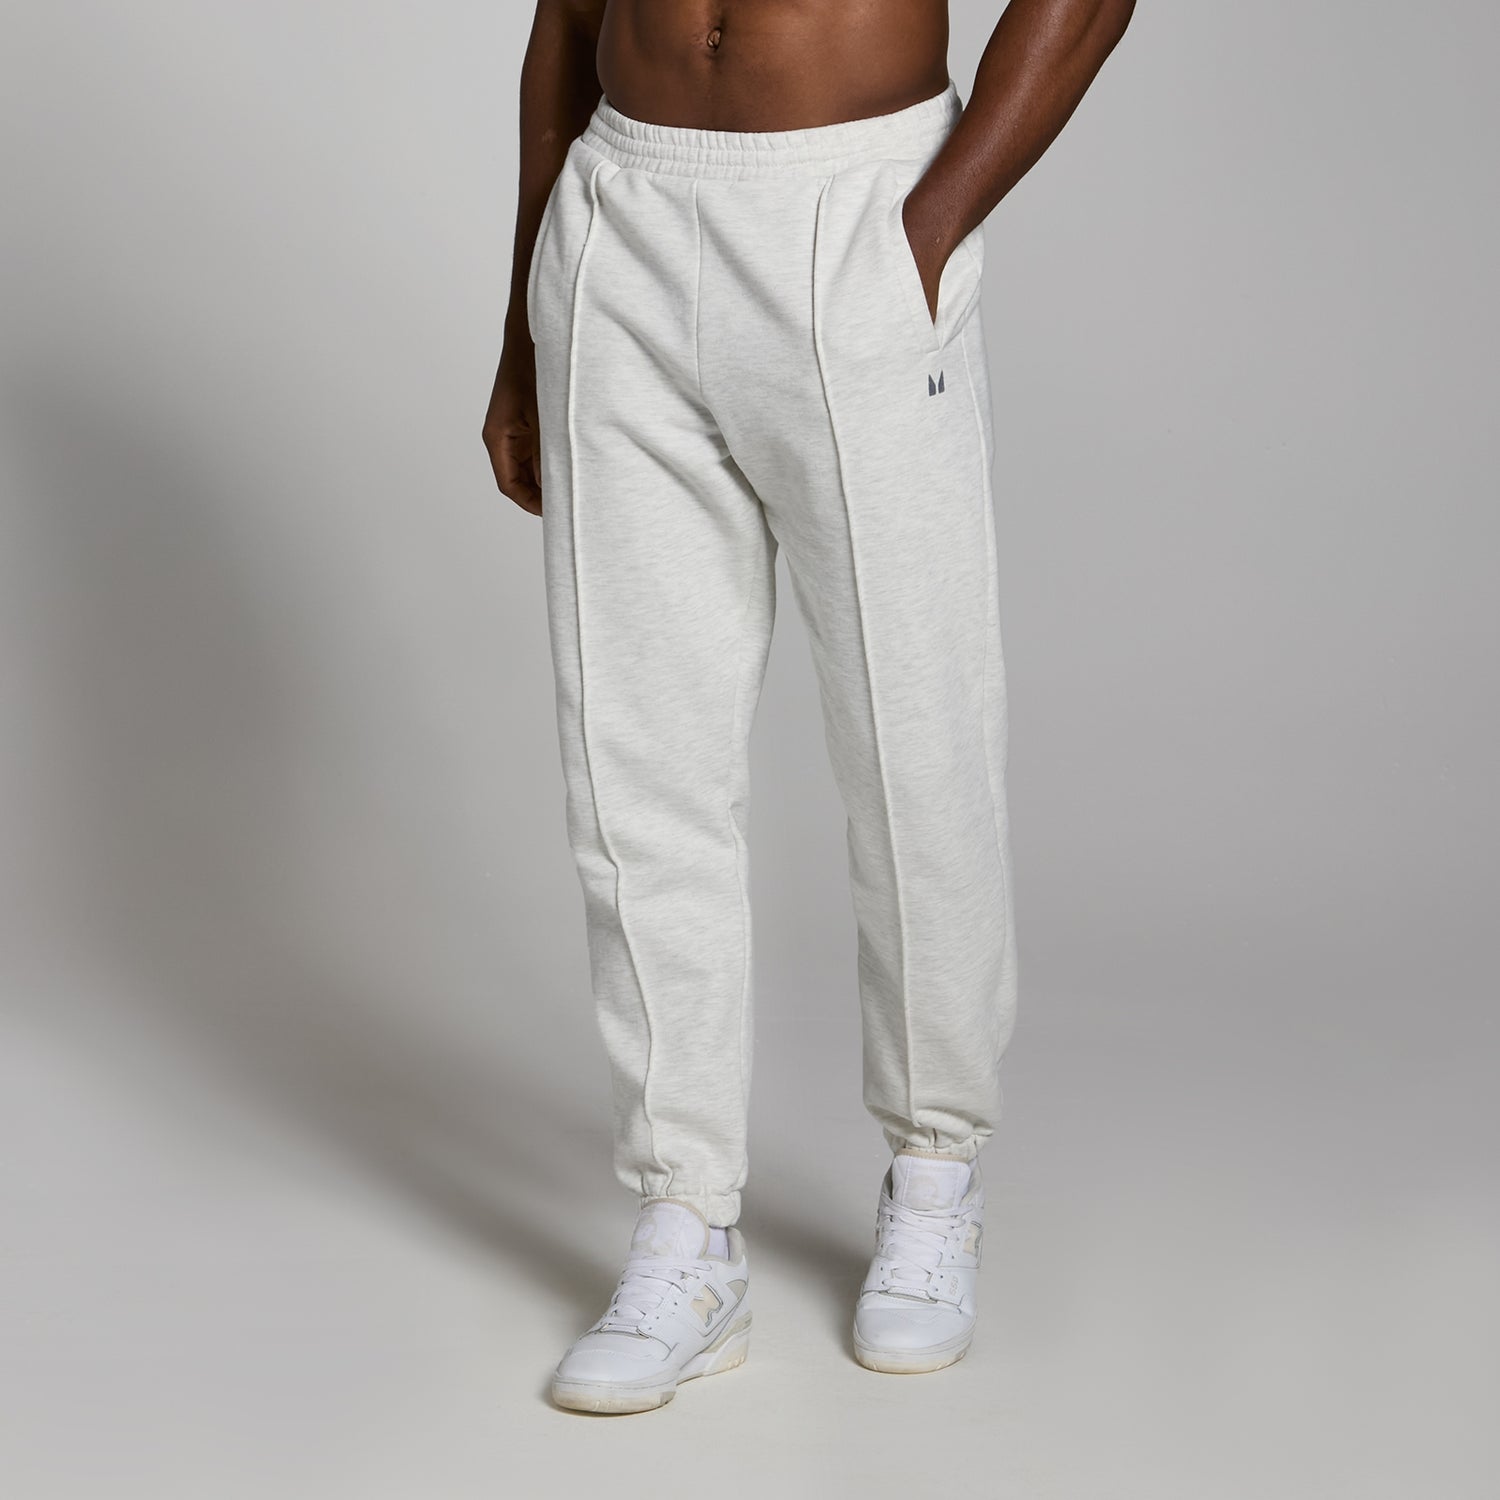 Lifestyle生活方式系列男士超大版型厚实运动裤 - 浅麻灰 - XS